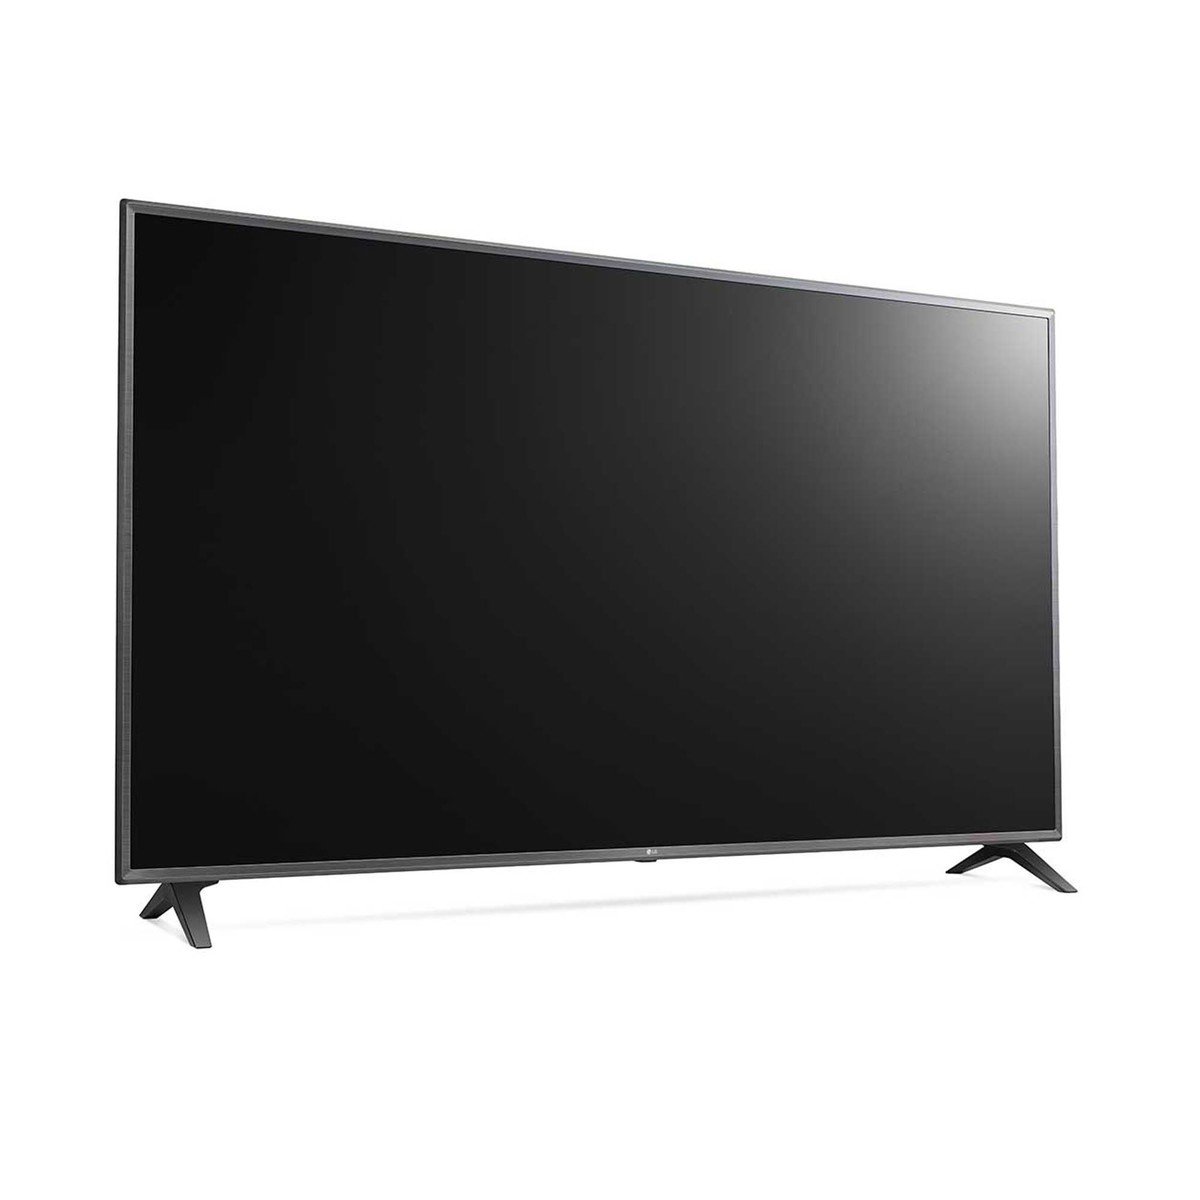 LG Ultra HD Smart LED TV 75UM7180PVB 75"